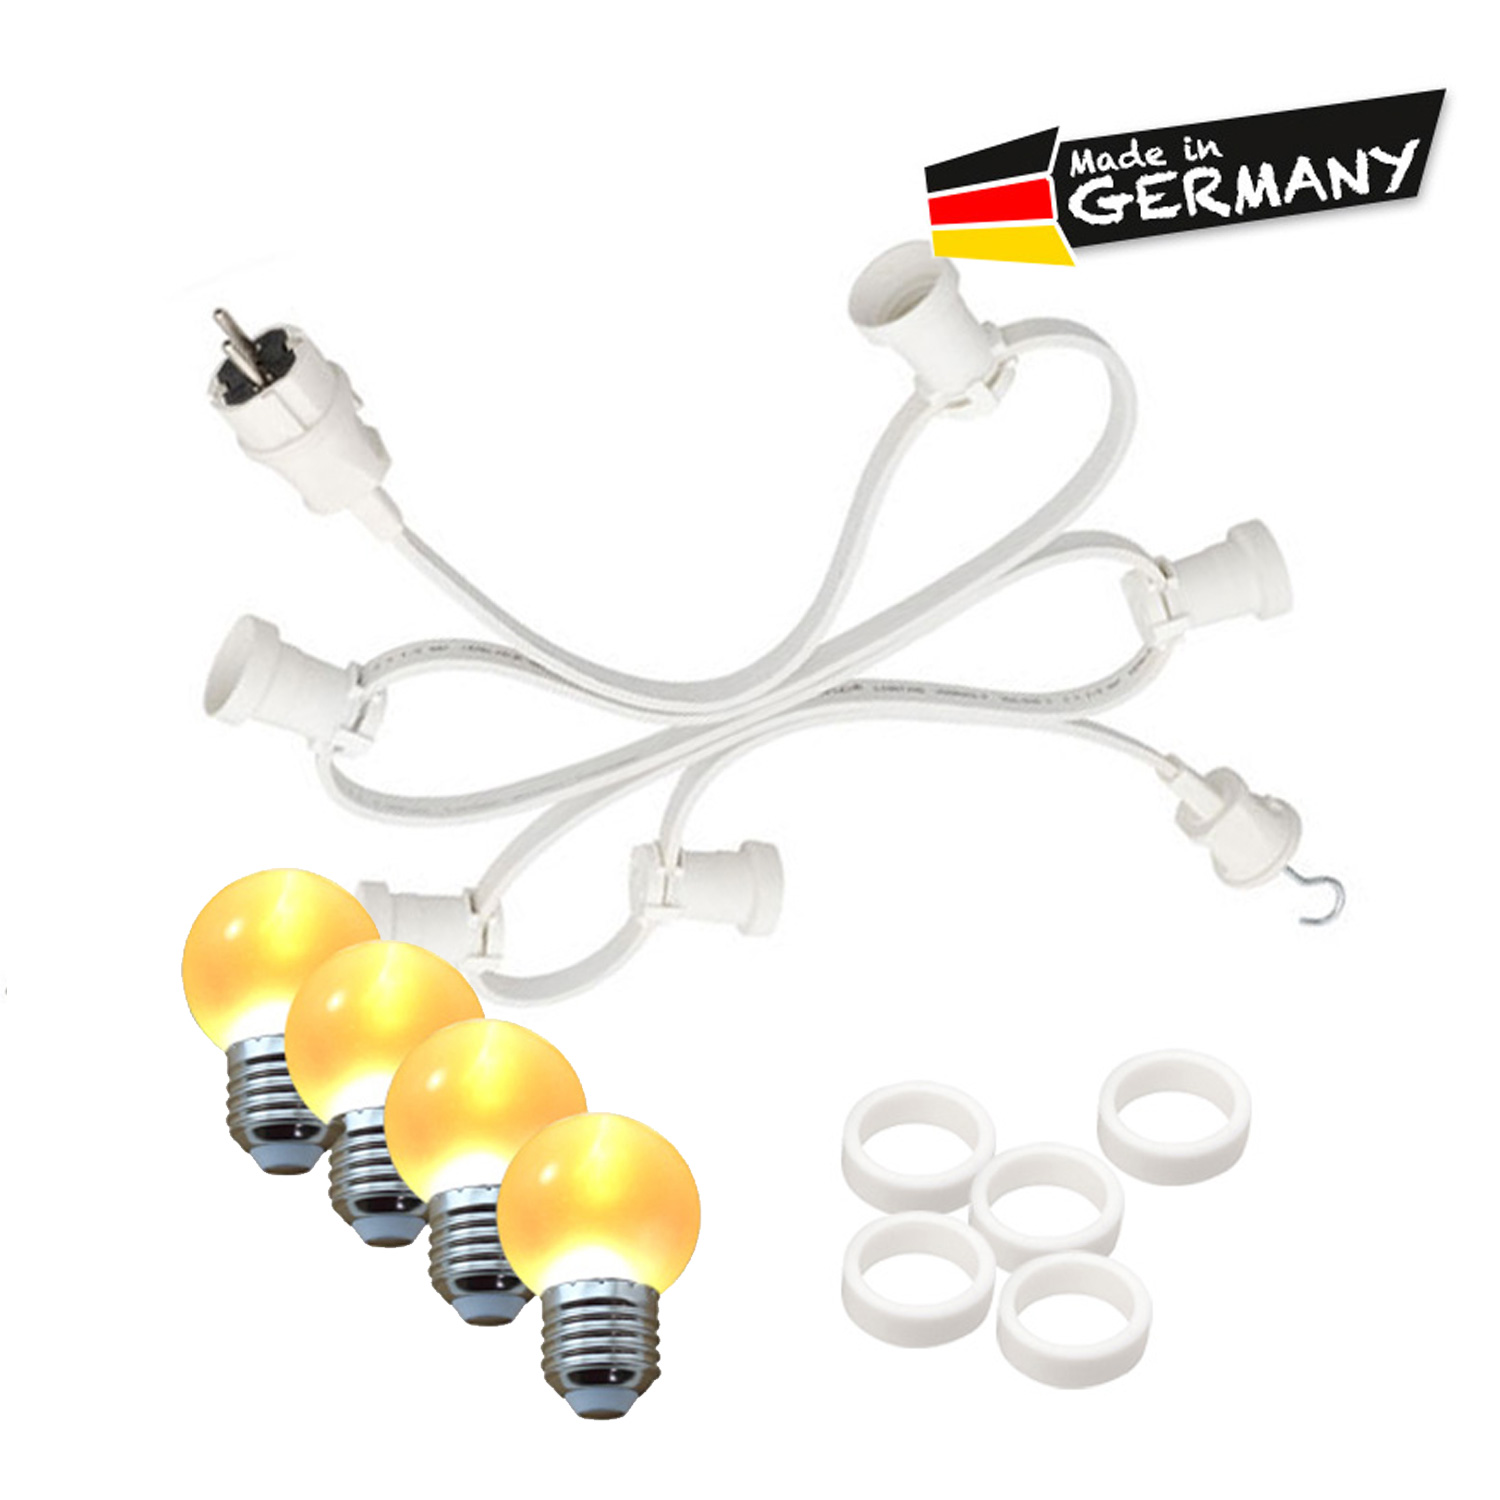 Illu-/Partylichterkette 10m - Außenlichterkette - Made in Germany - 10 x ultra-warmweiße LED Kugeln